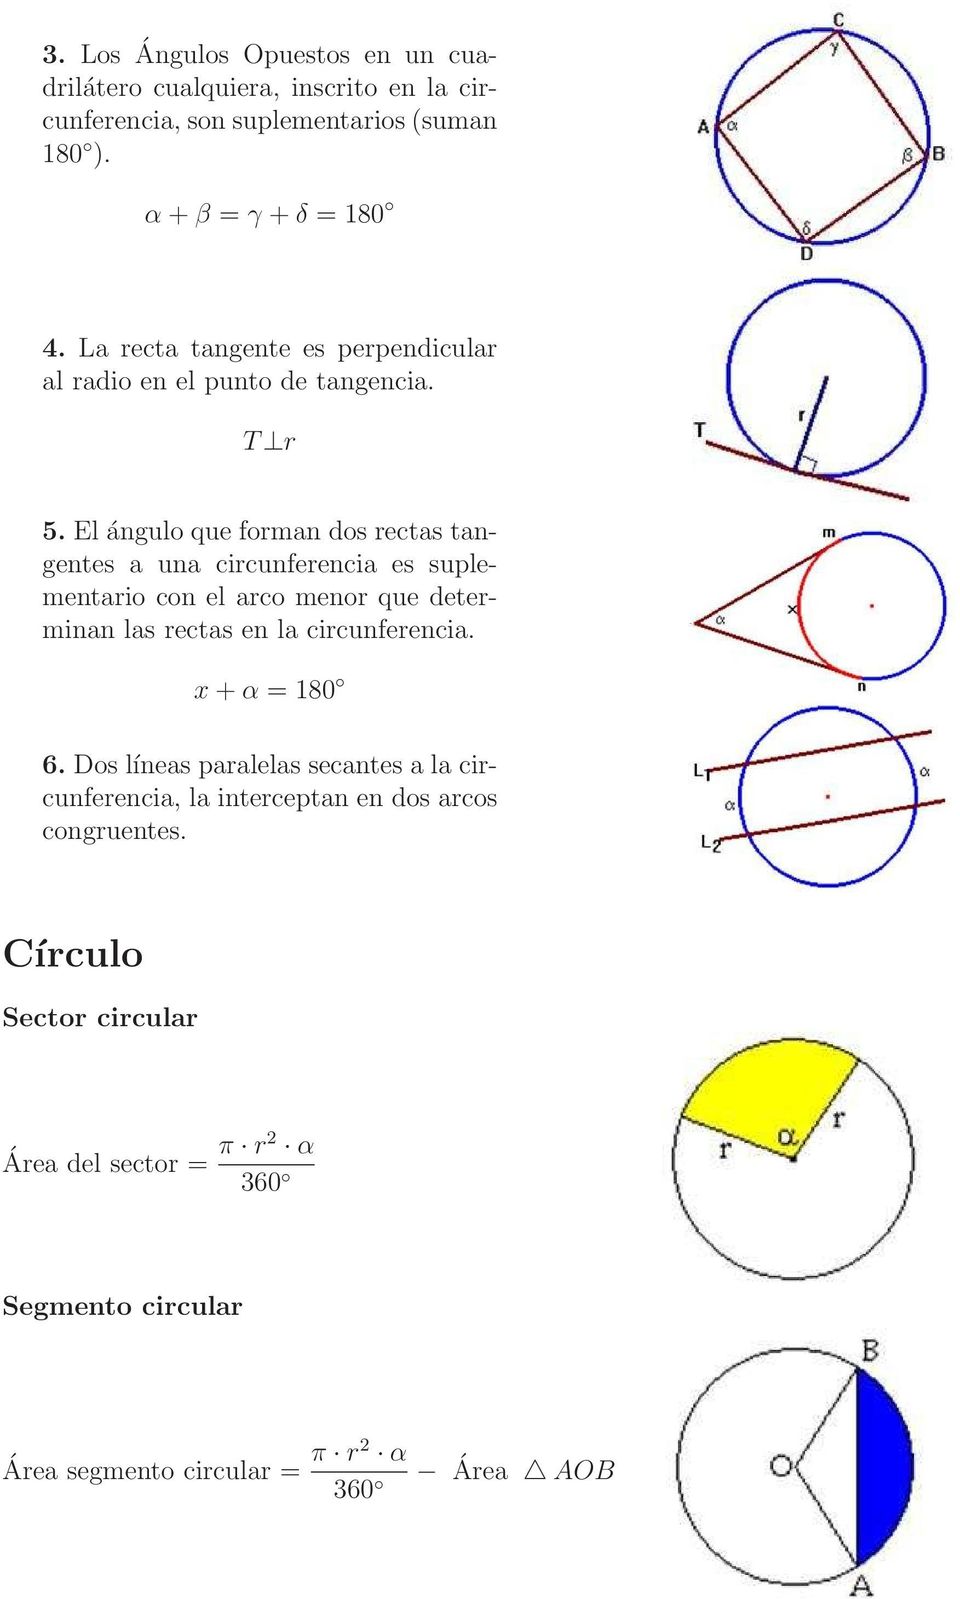 El ángulo que forman dos rectas tangentes a una circunferencia es suplementario con el arco menor que determinan las rectas en la circunferencia.